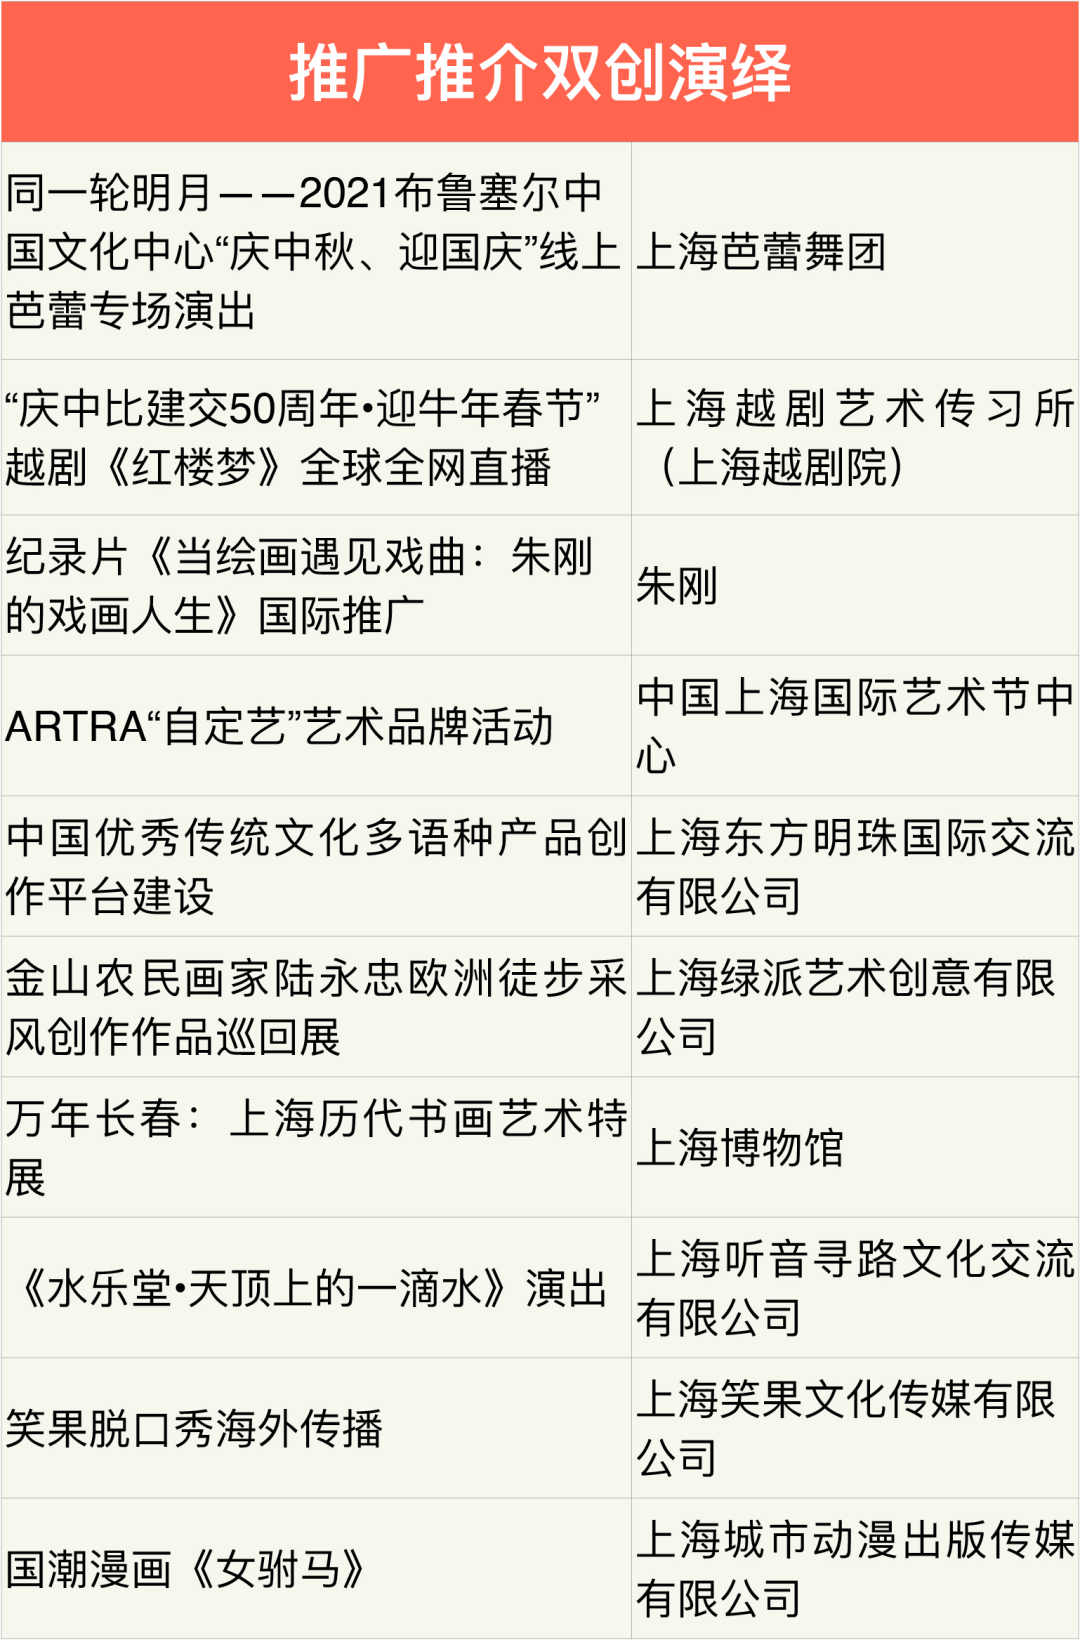 米哈游 等企业获得上海市“中华文化走出去”专项扶持资金插图1